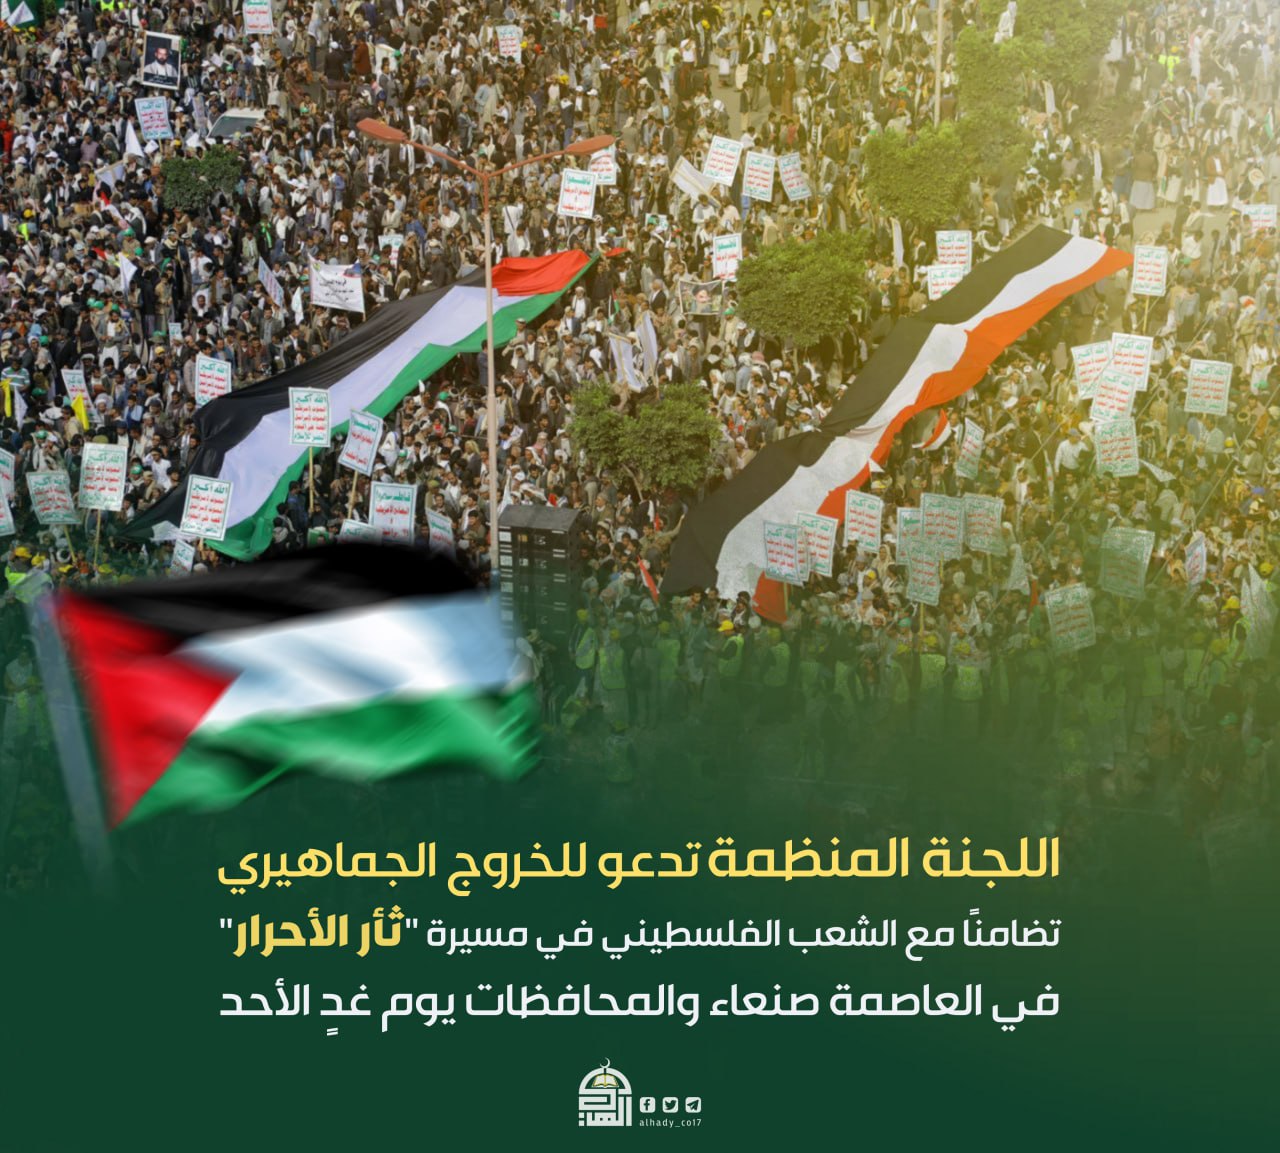 اللجنة المنظمة تدعو للخروج الجماهيري تضامنا مع الشعب الفلسطيني غدا الأحد